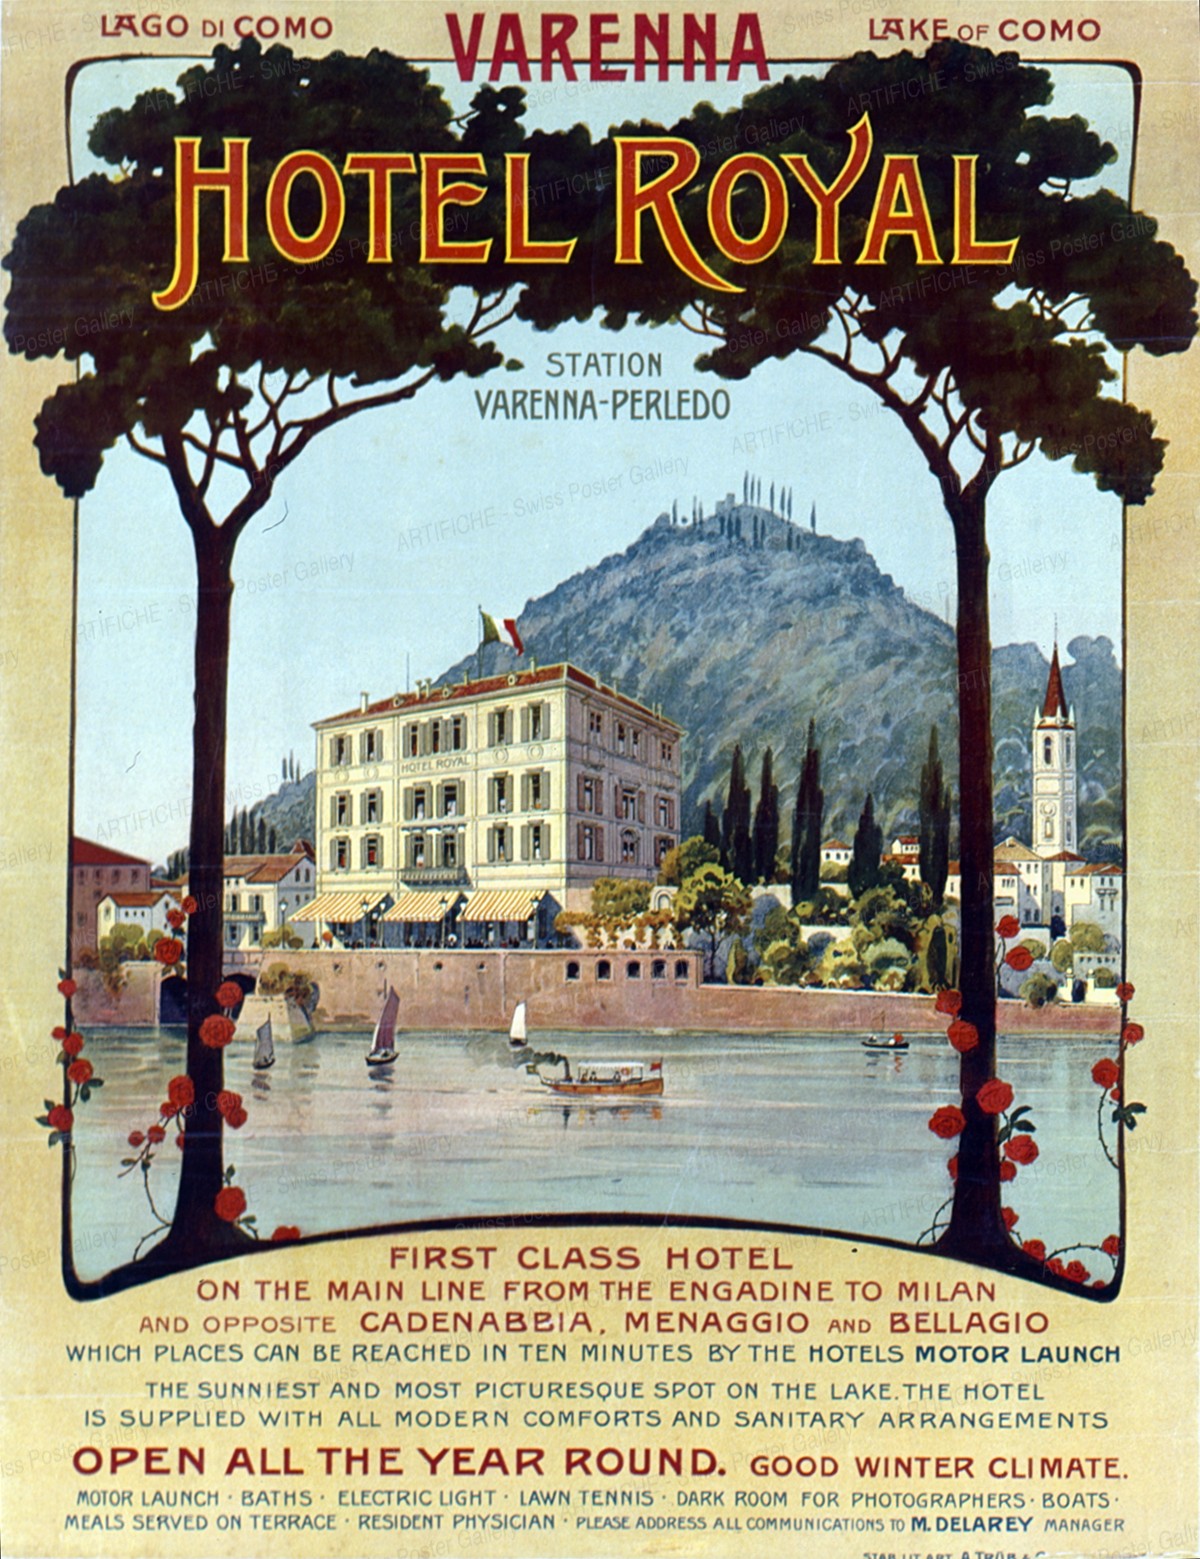 Royal Hotel Varenna – Lake of Como, Artist unknown